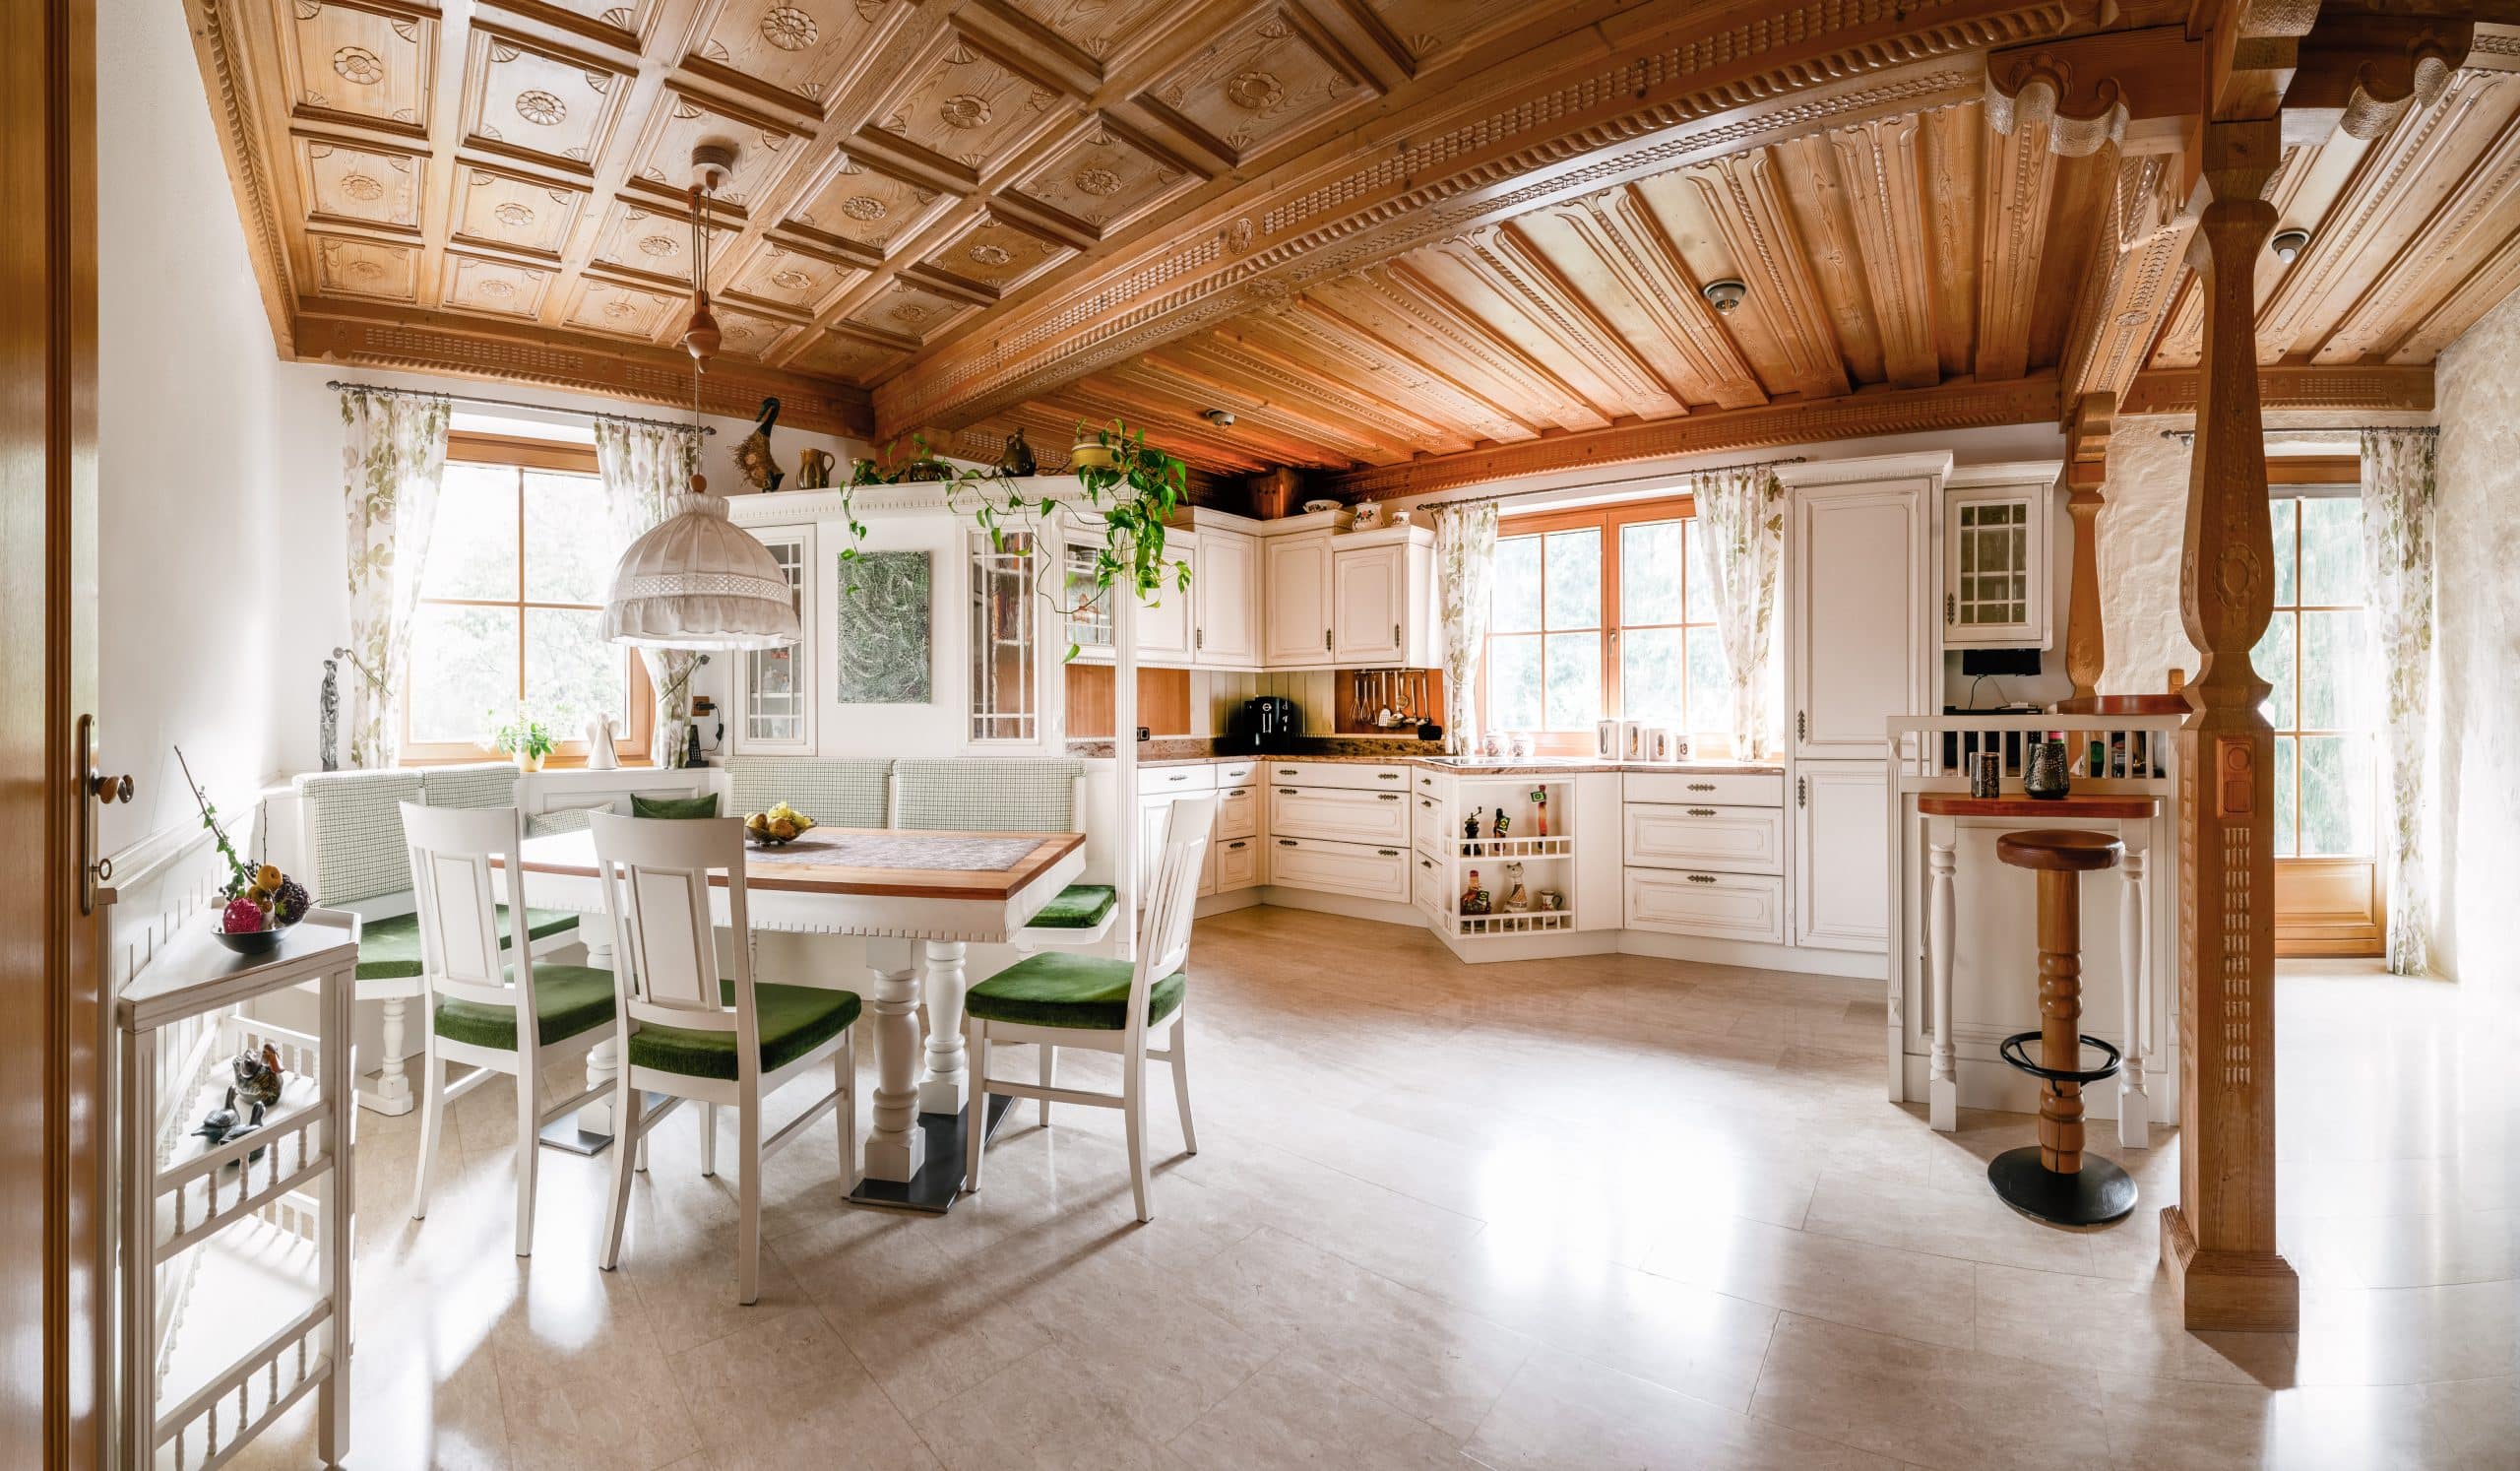 BÖHM MÖBEL zeigt eine weiße Küche im Landhausstil mit verspielten Schnitzereien, brauner Arbeitsplatte und einen Esstisch mit Stühlen und grünen Sitzkissen.